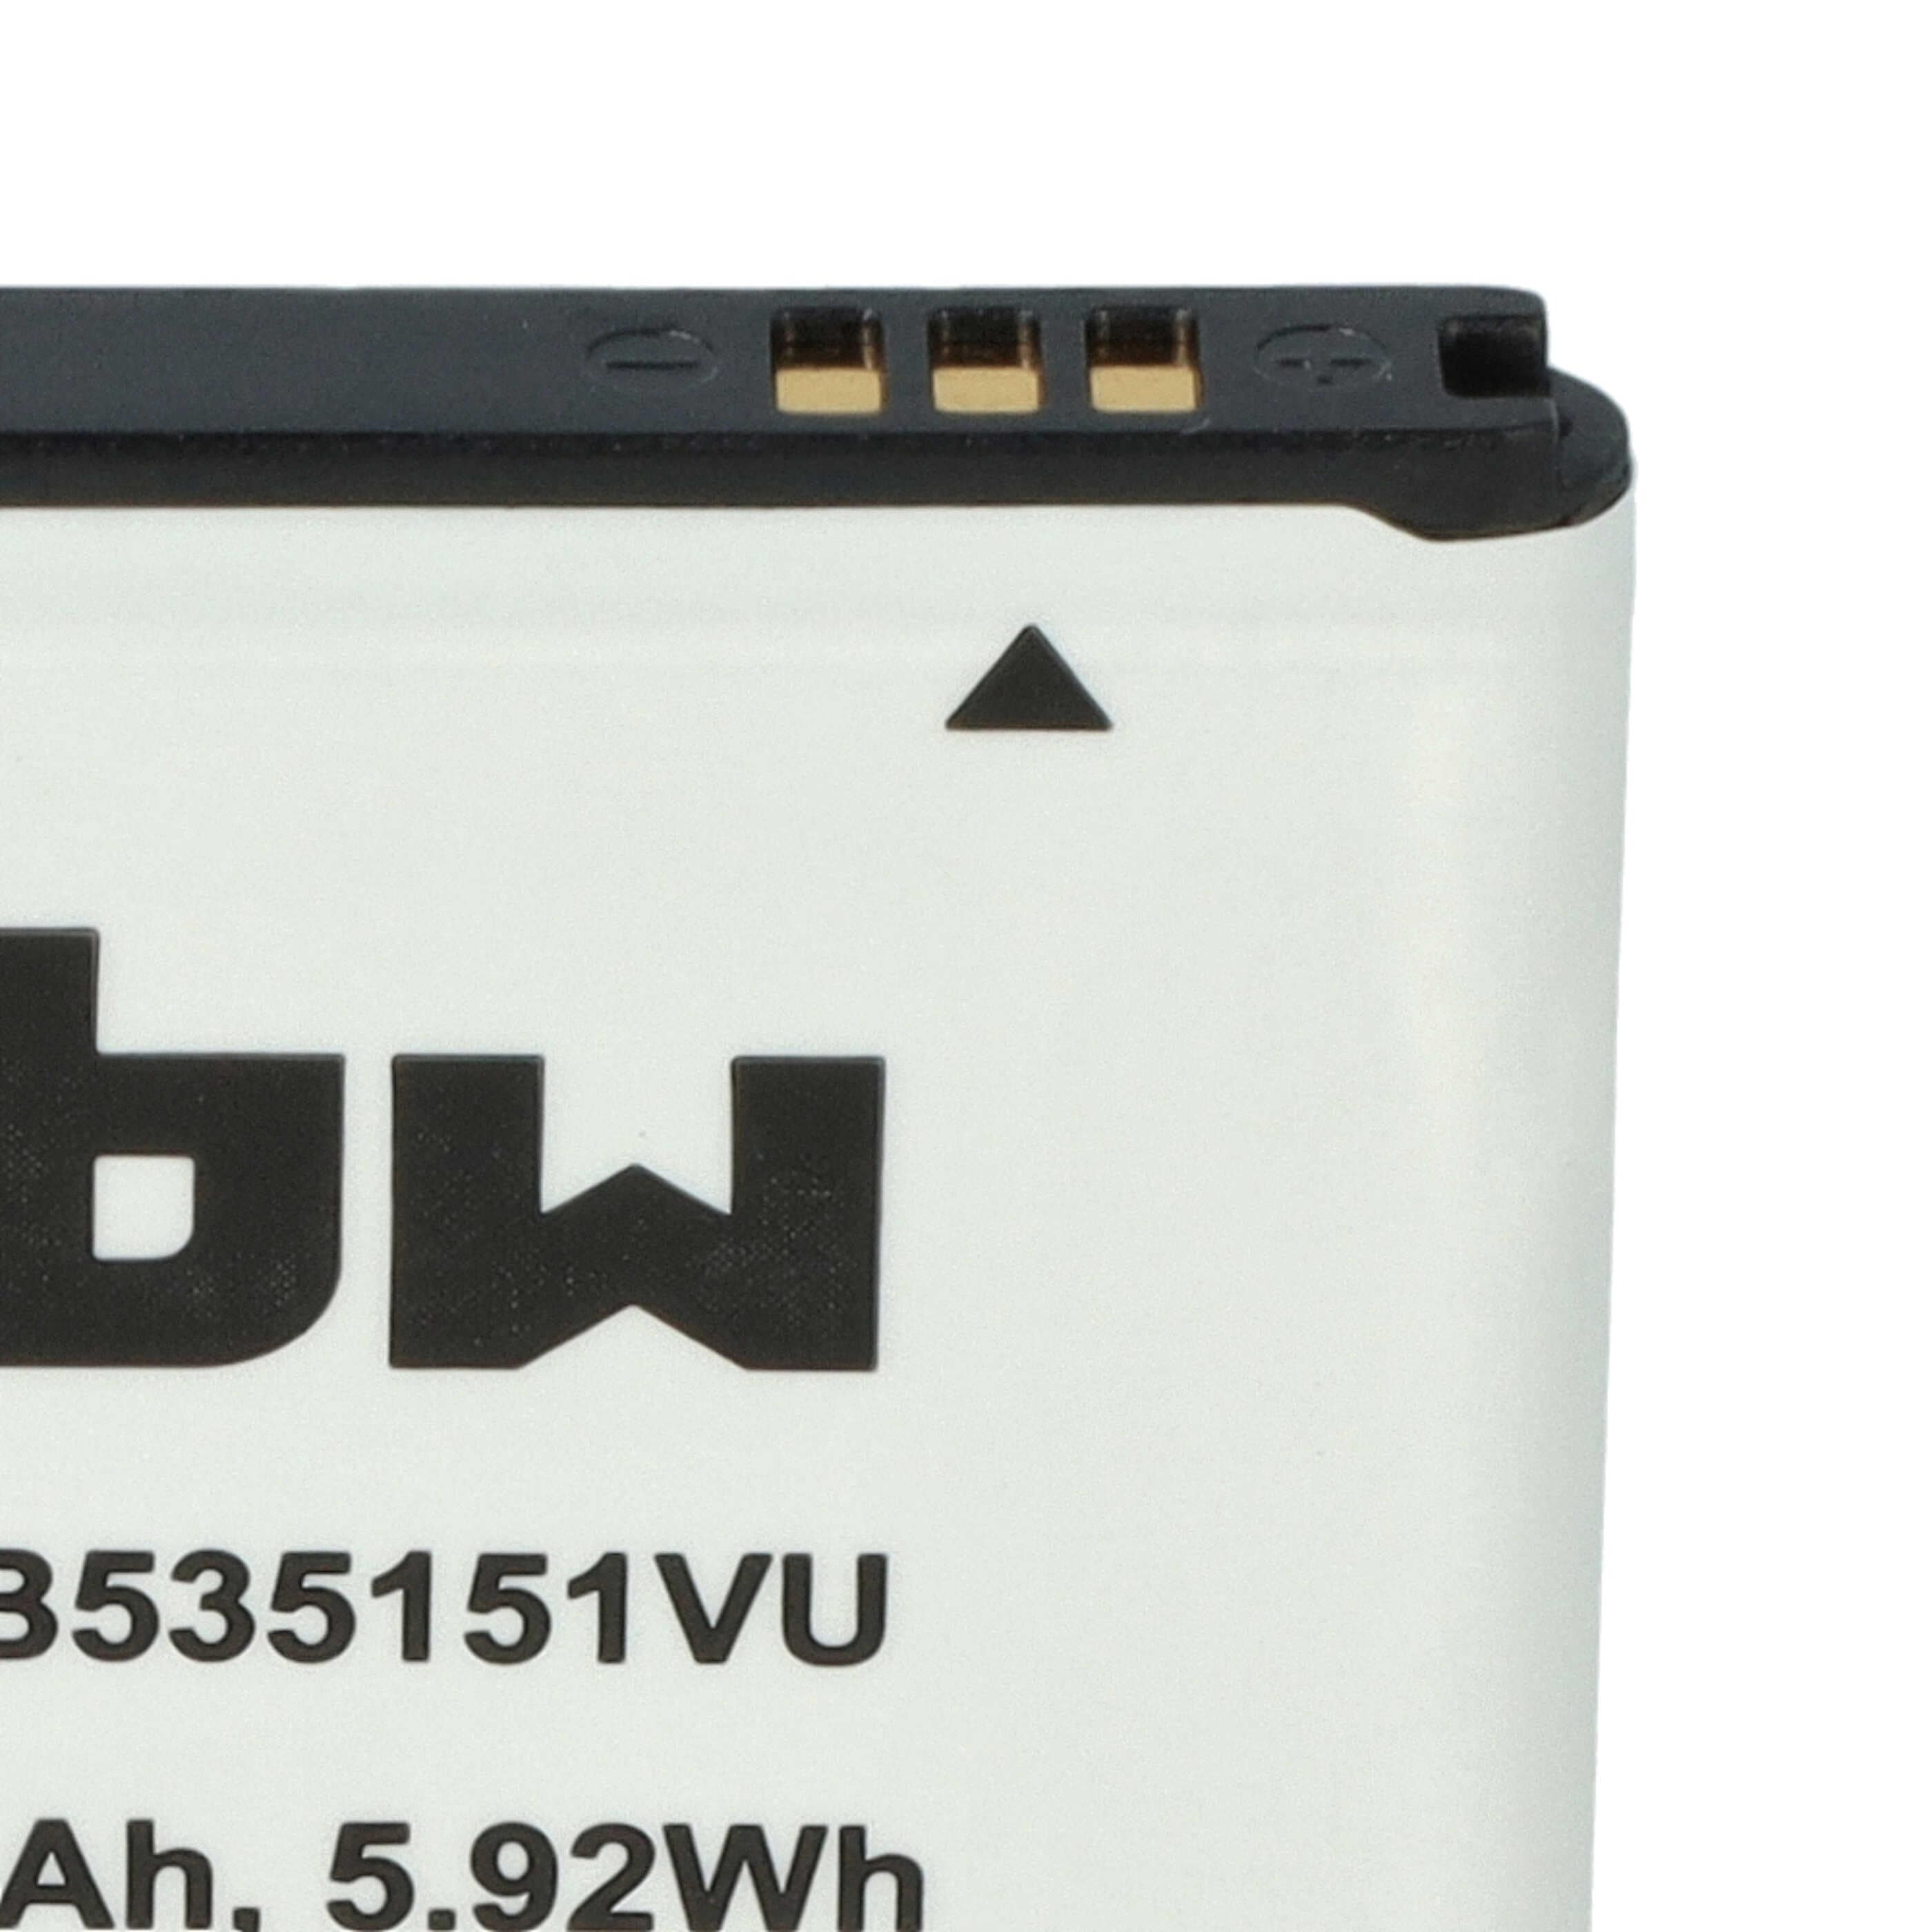 Batterie remplace Samsung EB535151VU, EB535151VUBSTD pour téléphone portable - 1600mAh, 3,7V, Li-ion